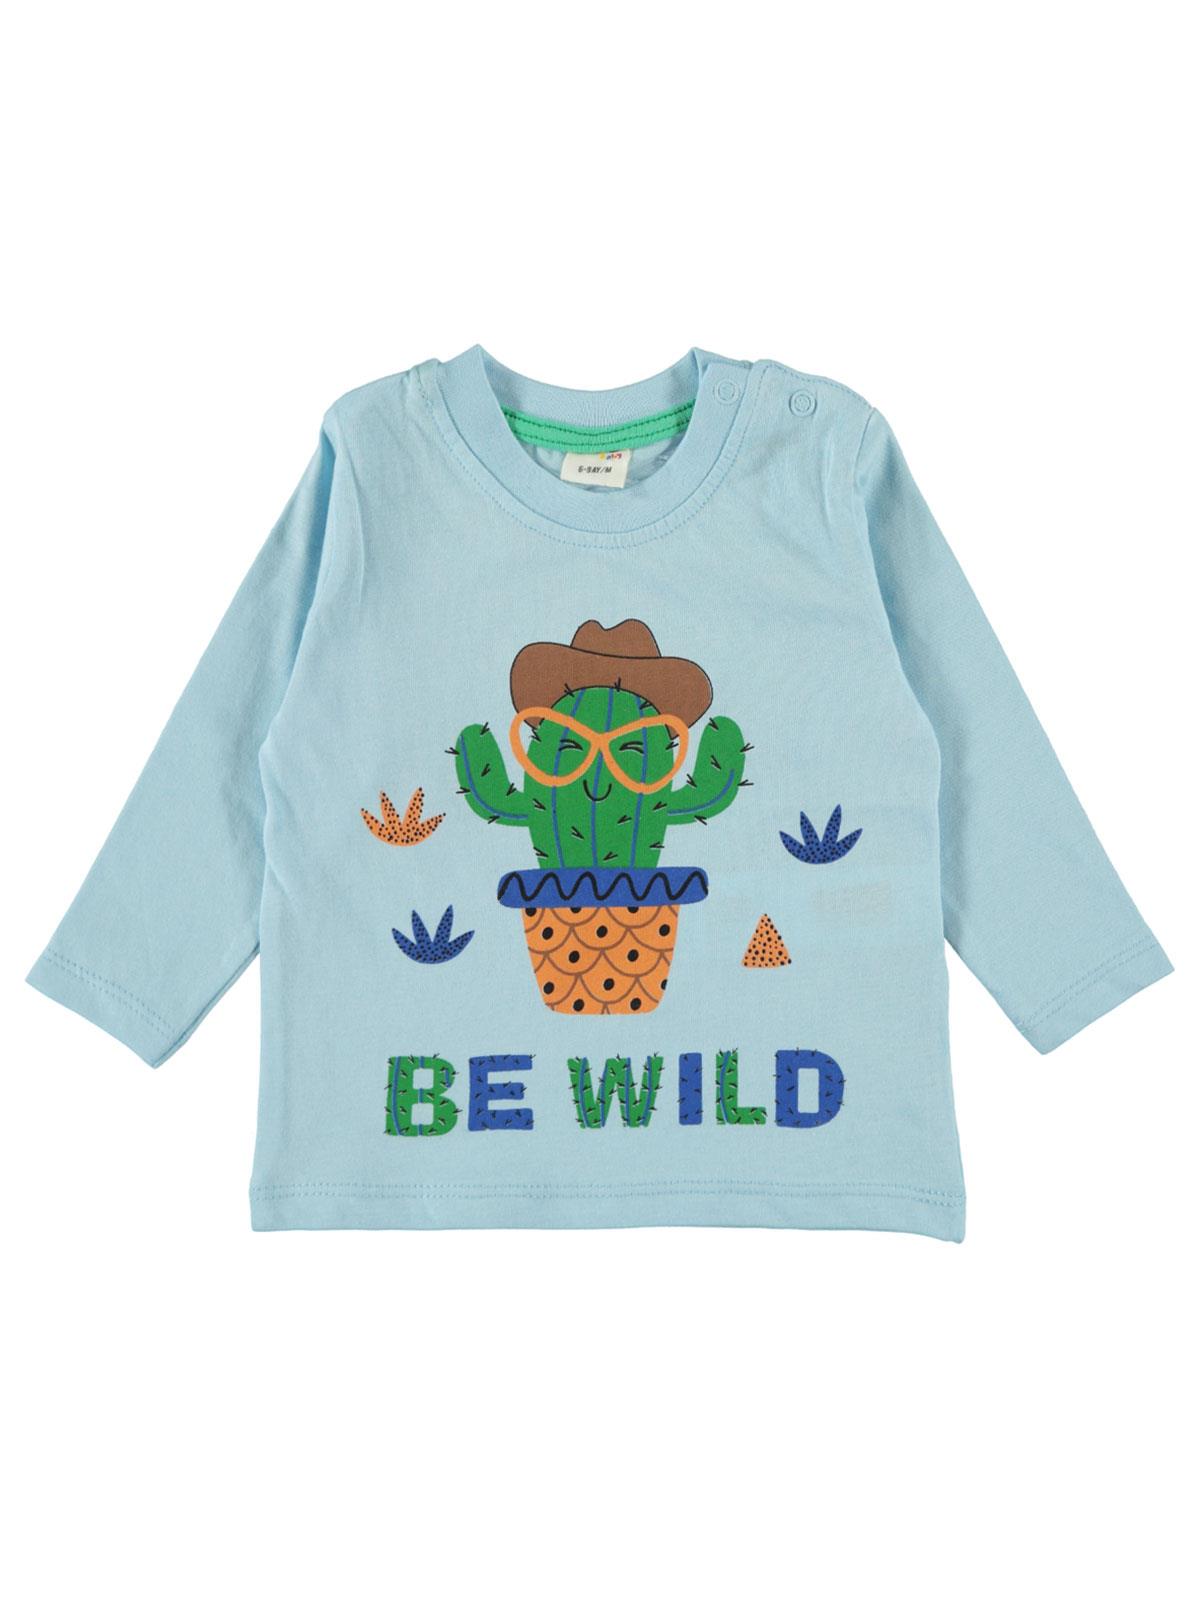 Civil Baby Erkek Bebek Kaktus Baskılı Sweatshirt 6-18 Ay Mavi